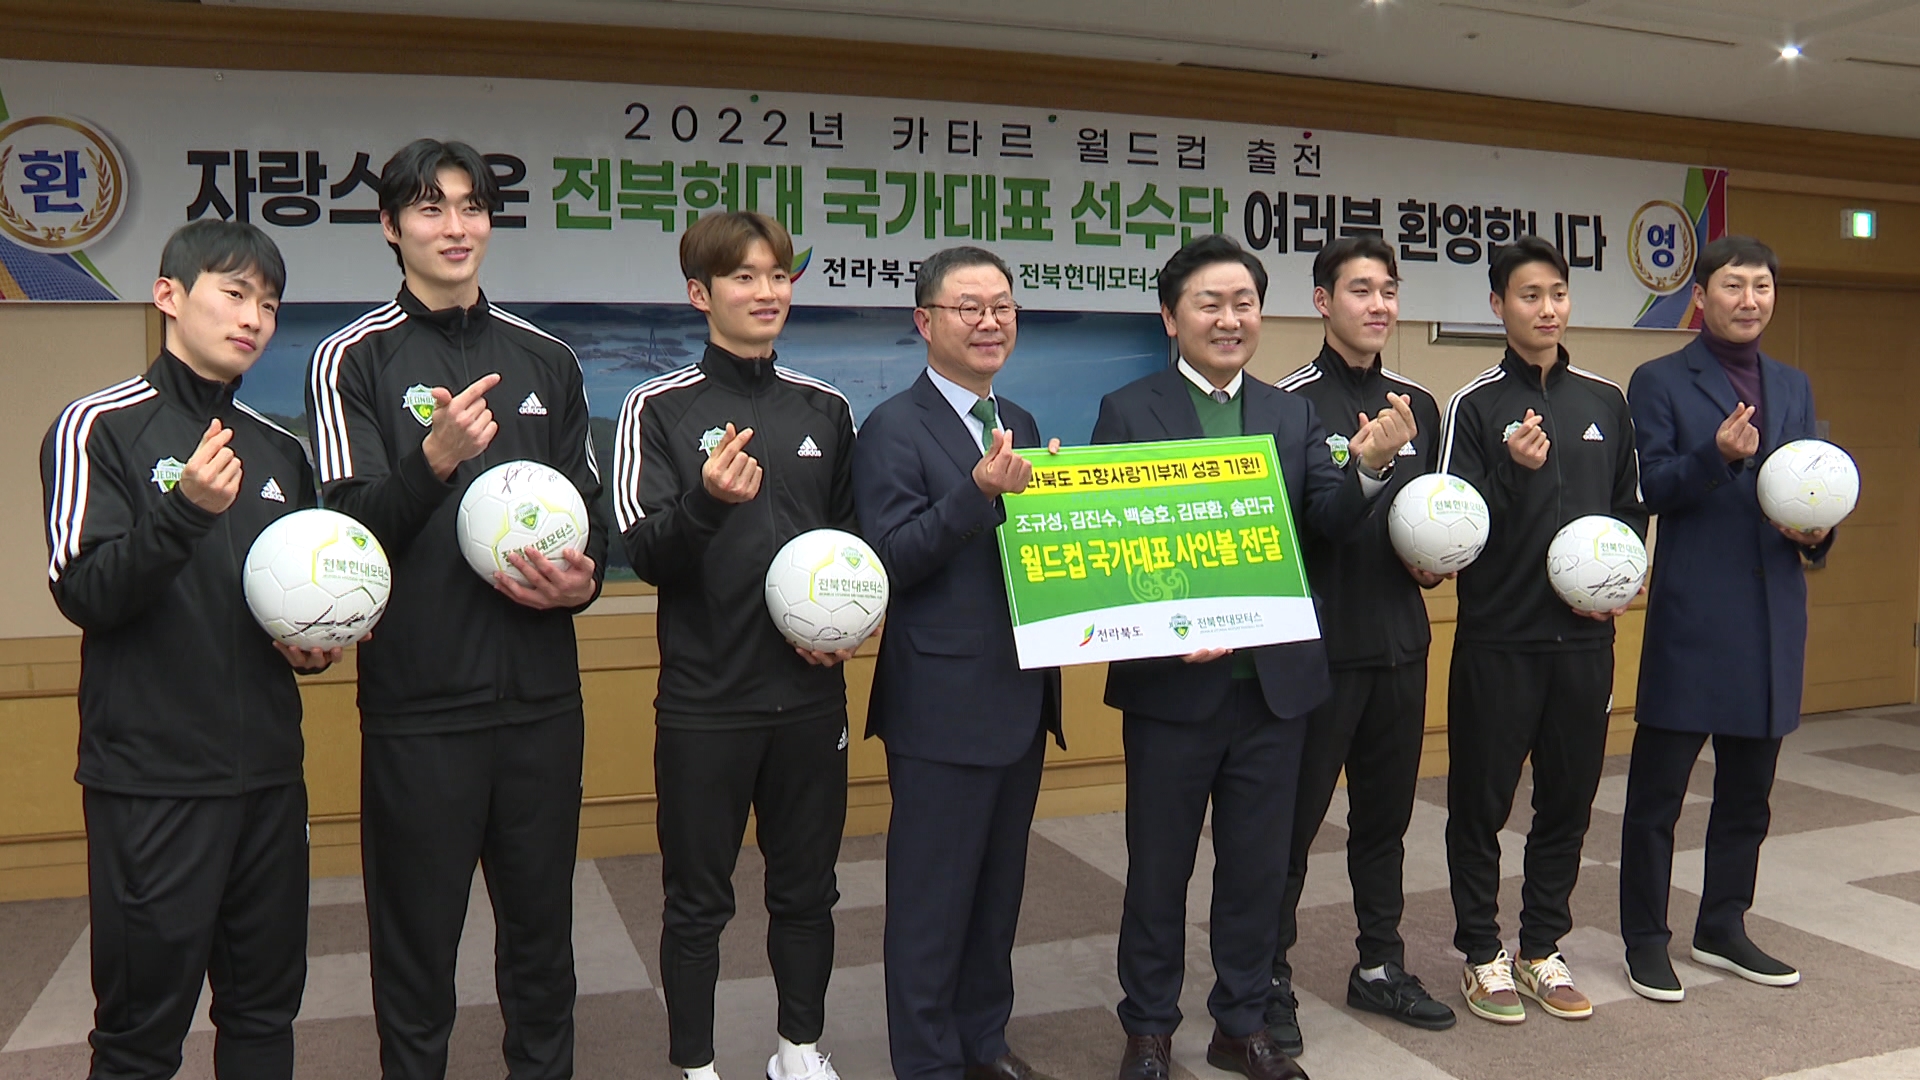 김진수·조규성 등 월드컵 주역, 토크콘서트 수익금 기부